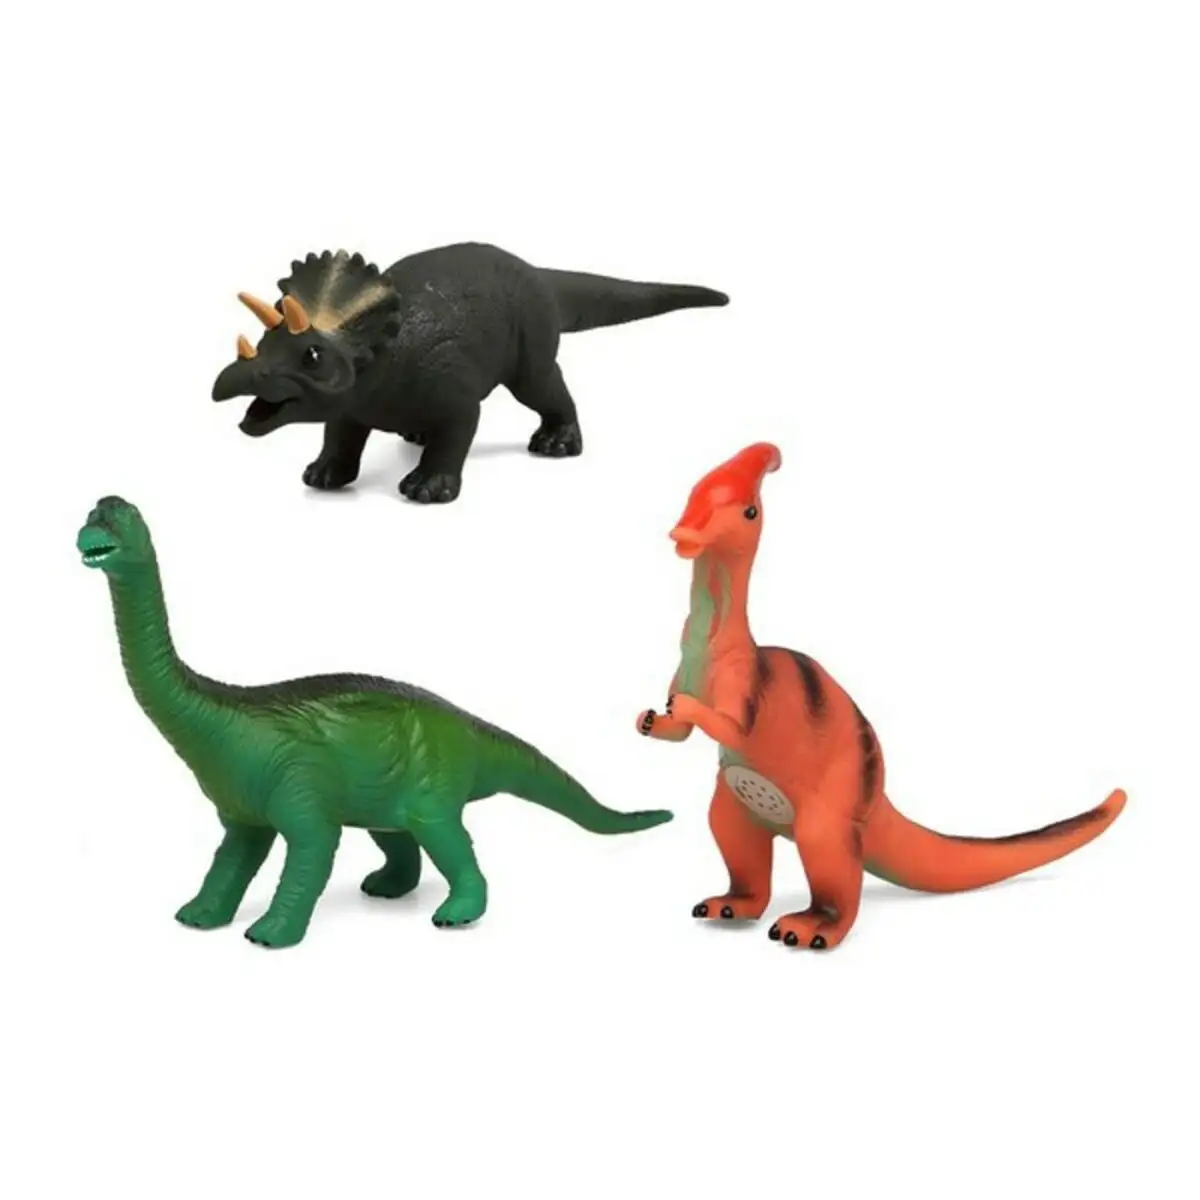 Dinosaure jurassic 62851 28 cm_4063. DIAYTAR SENEGAL - Votre Destinée Shopping Personnalisée. Plongez dans notre boutique en ligne et créez votre propre expérience de shopping en choisissant parmi nos produits variés.